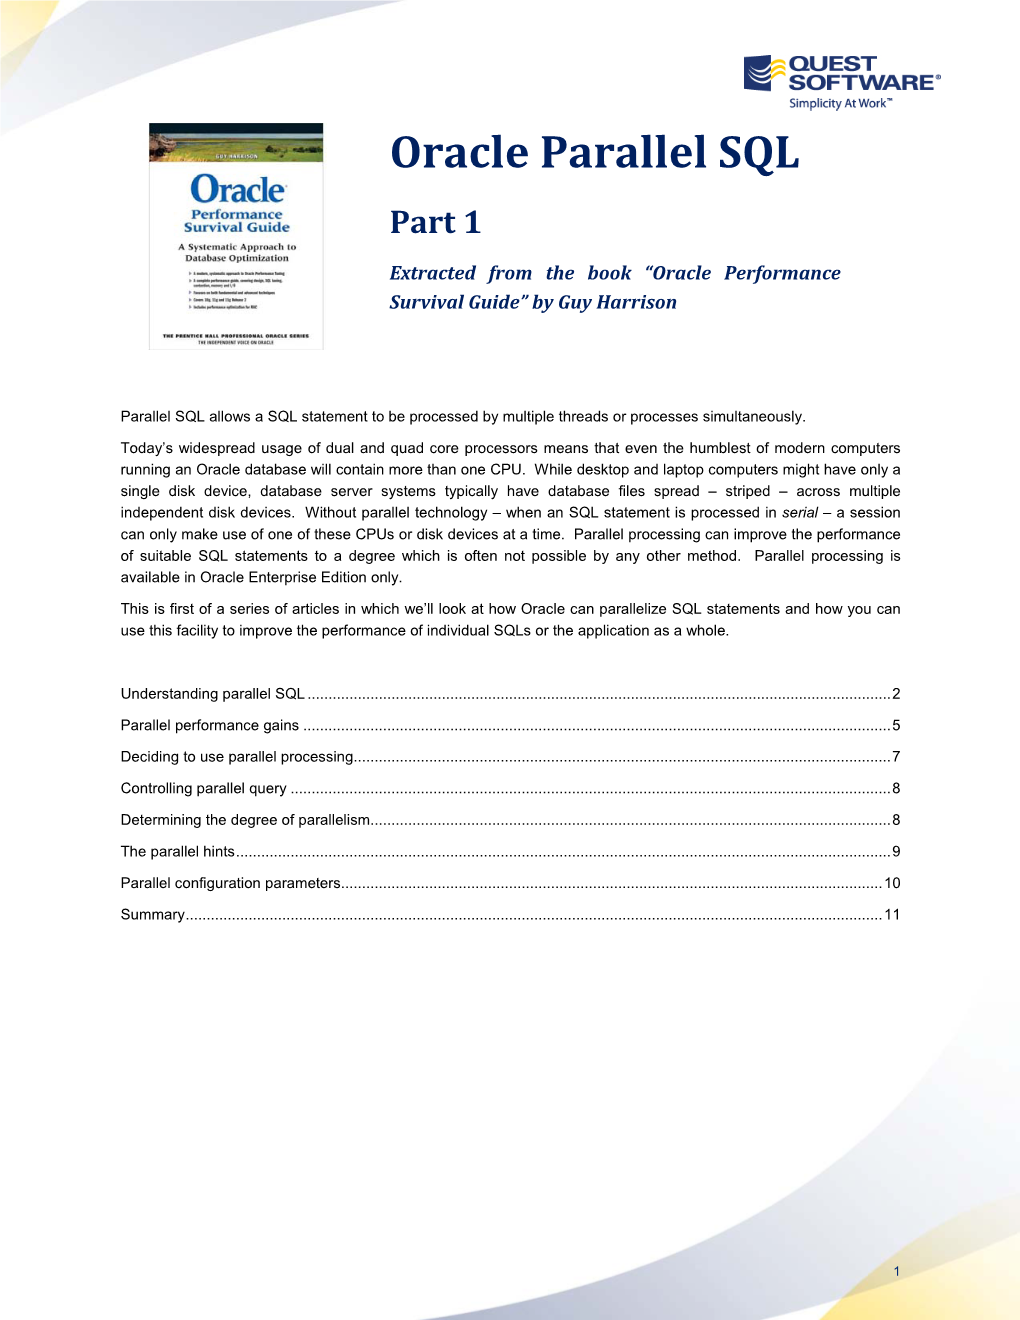 Oracle Parallel SQL Part 1